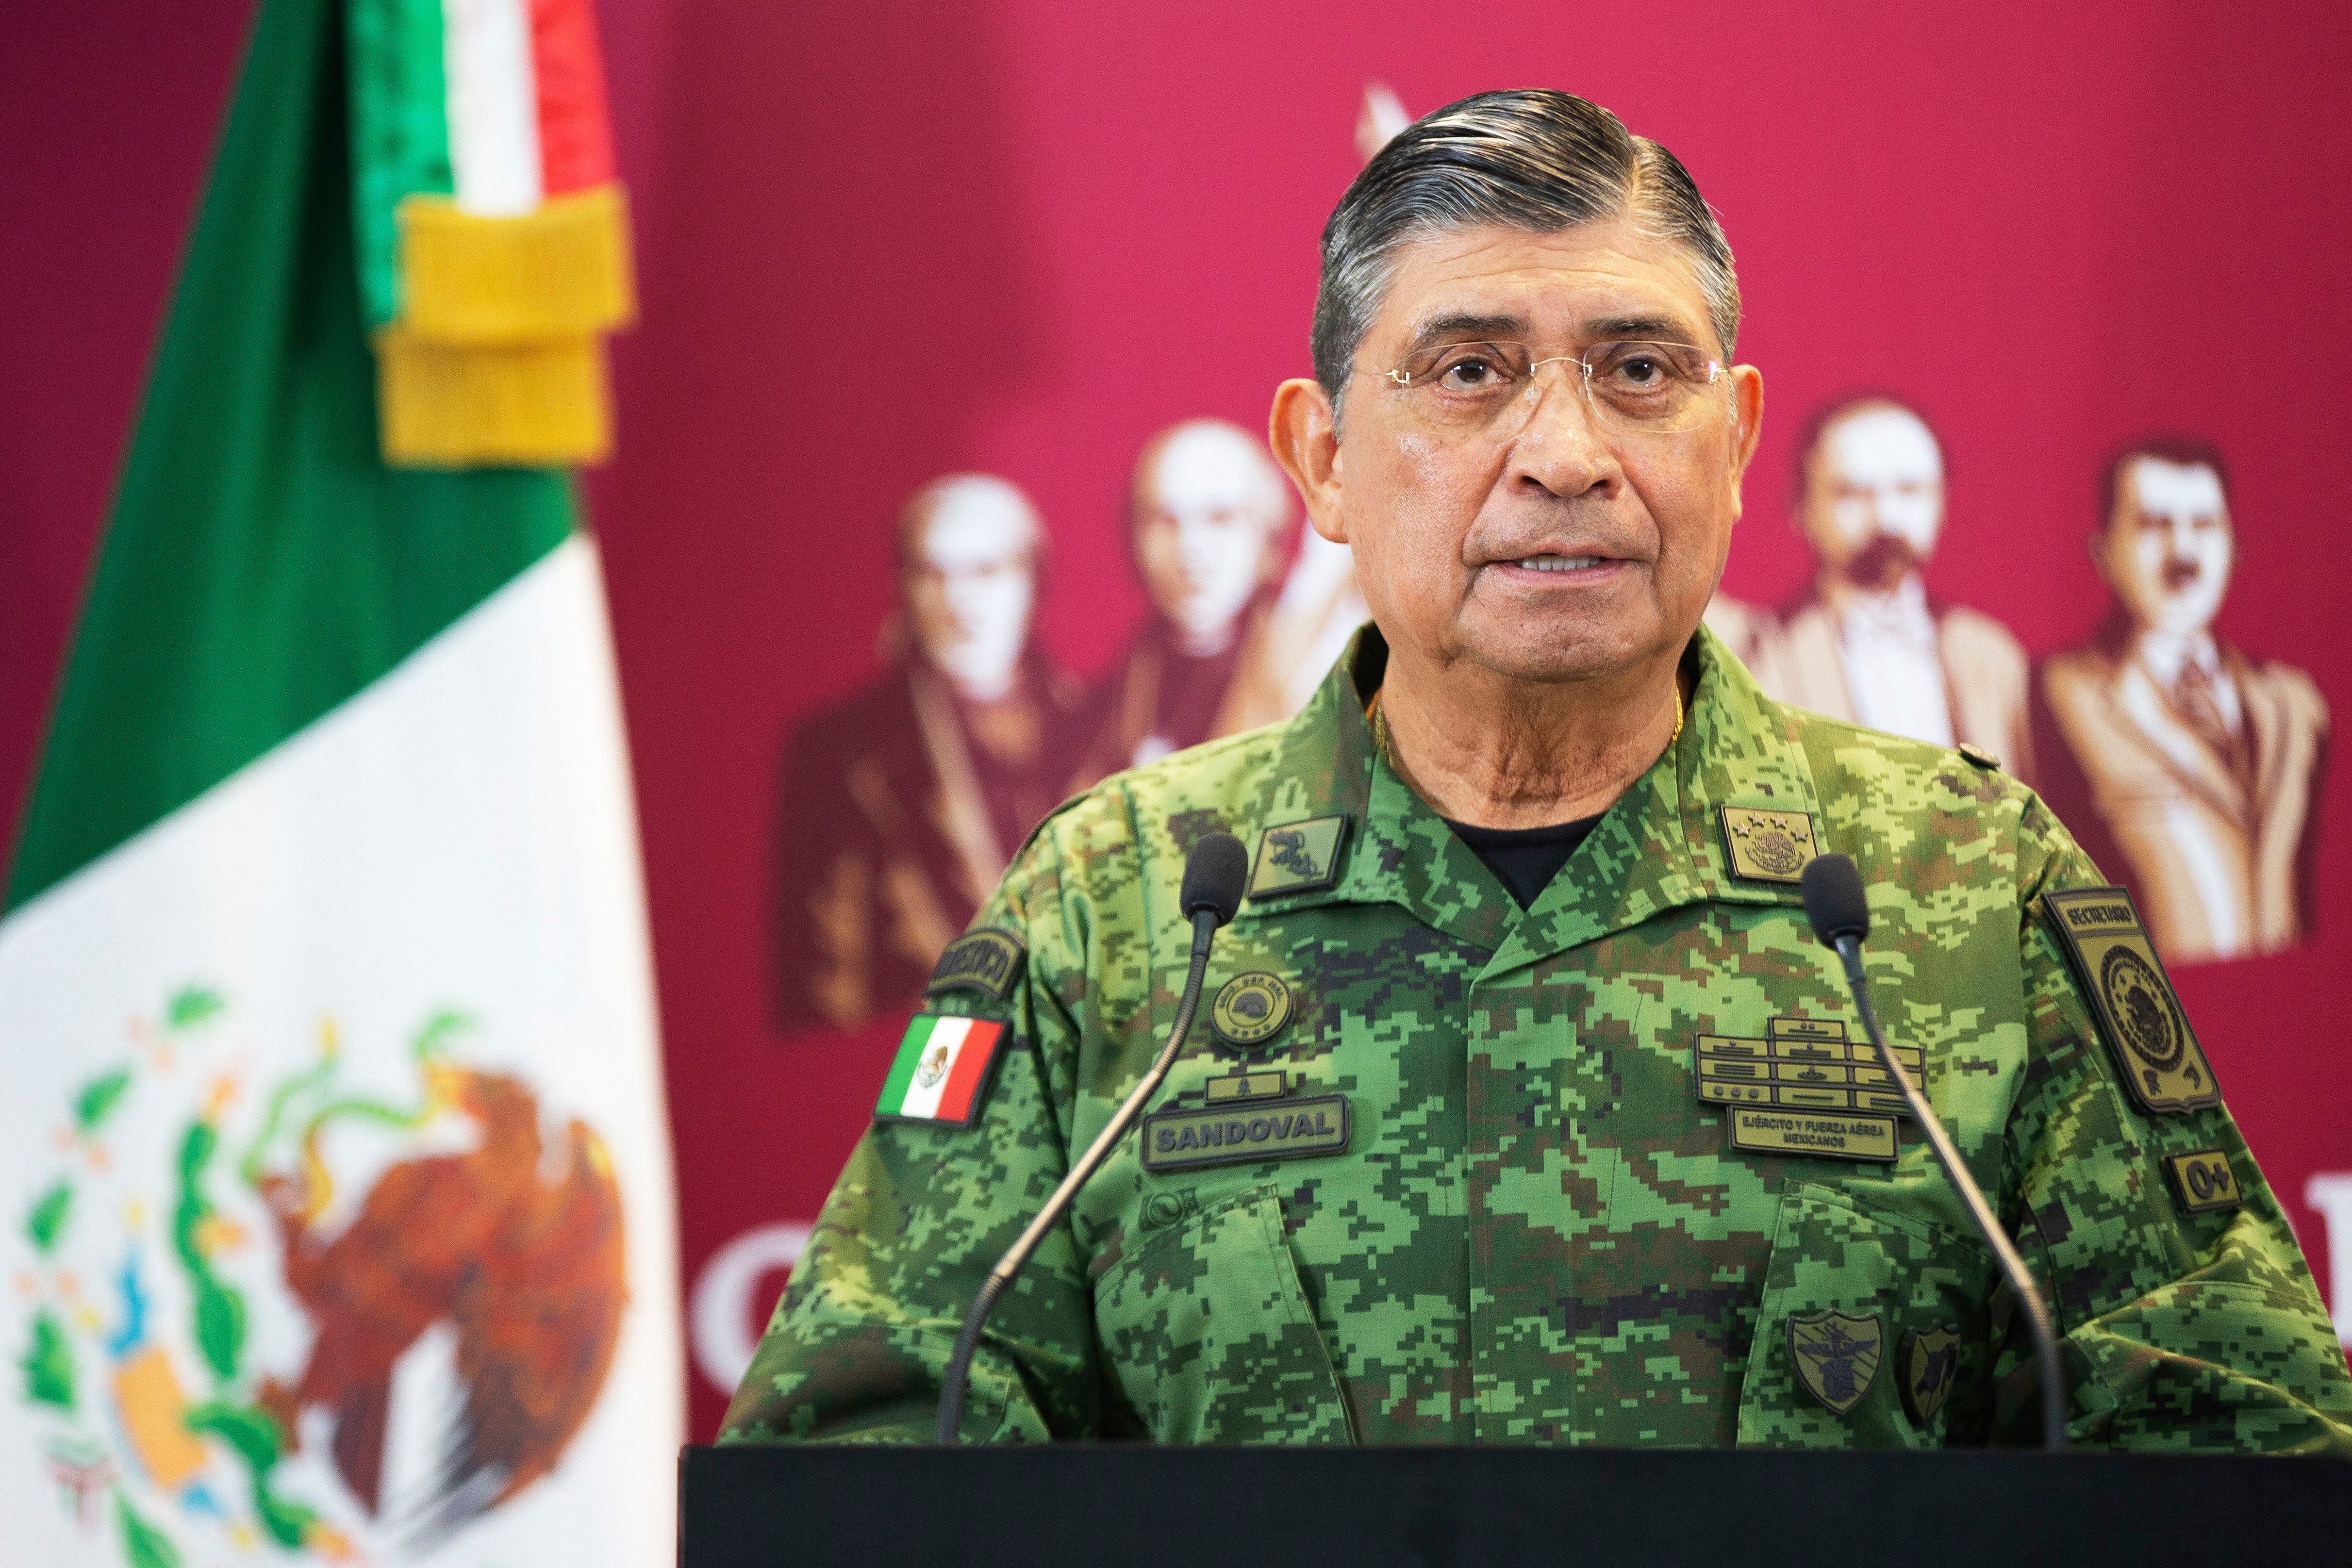 El secretario del Ejército de México, Luis Cresencio Sandoval, habla durante una conferencia de prensa en la Ciudad de México el 5 de enero de 2023, luego del arresto de Ovidio Guzmán, hijo del narcotraficante encarcelado Joaquín 